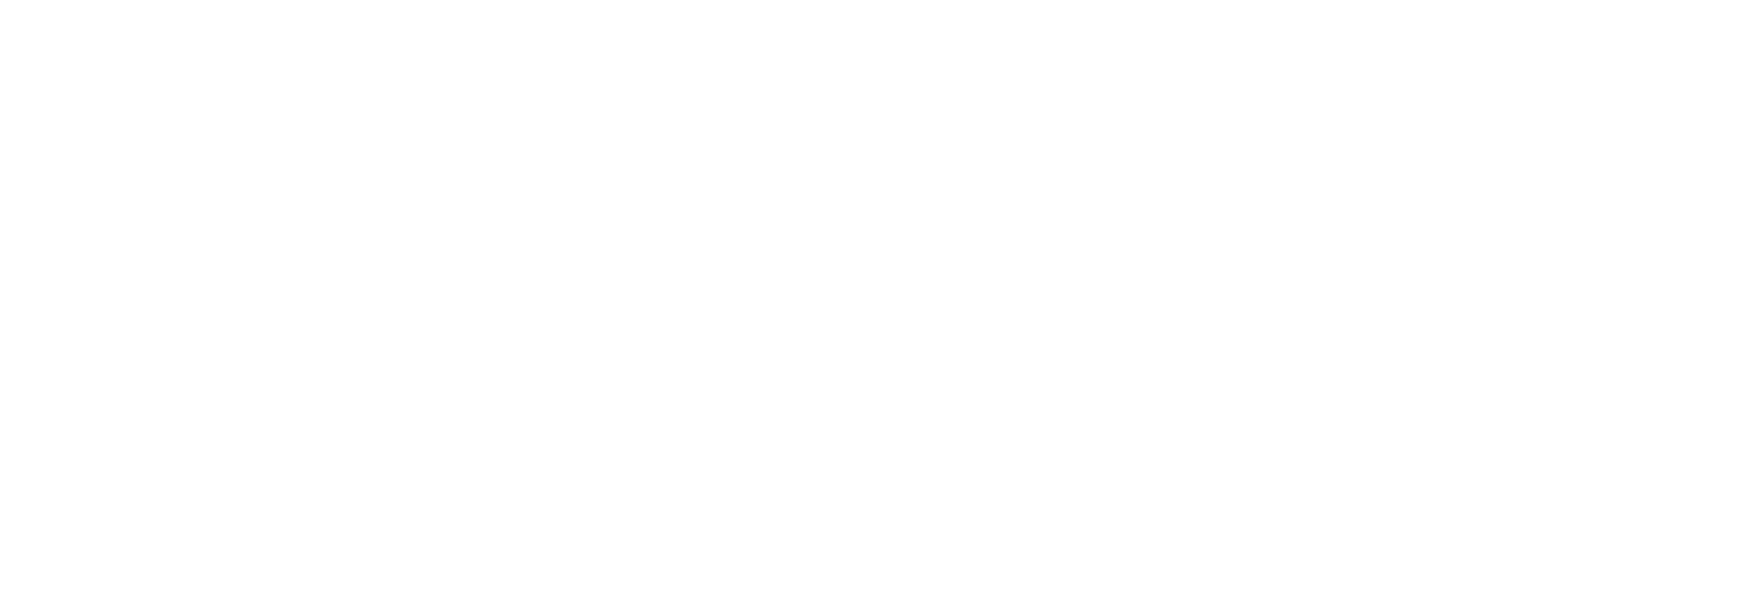 Colegio Monclair Logo